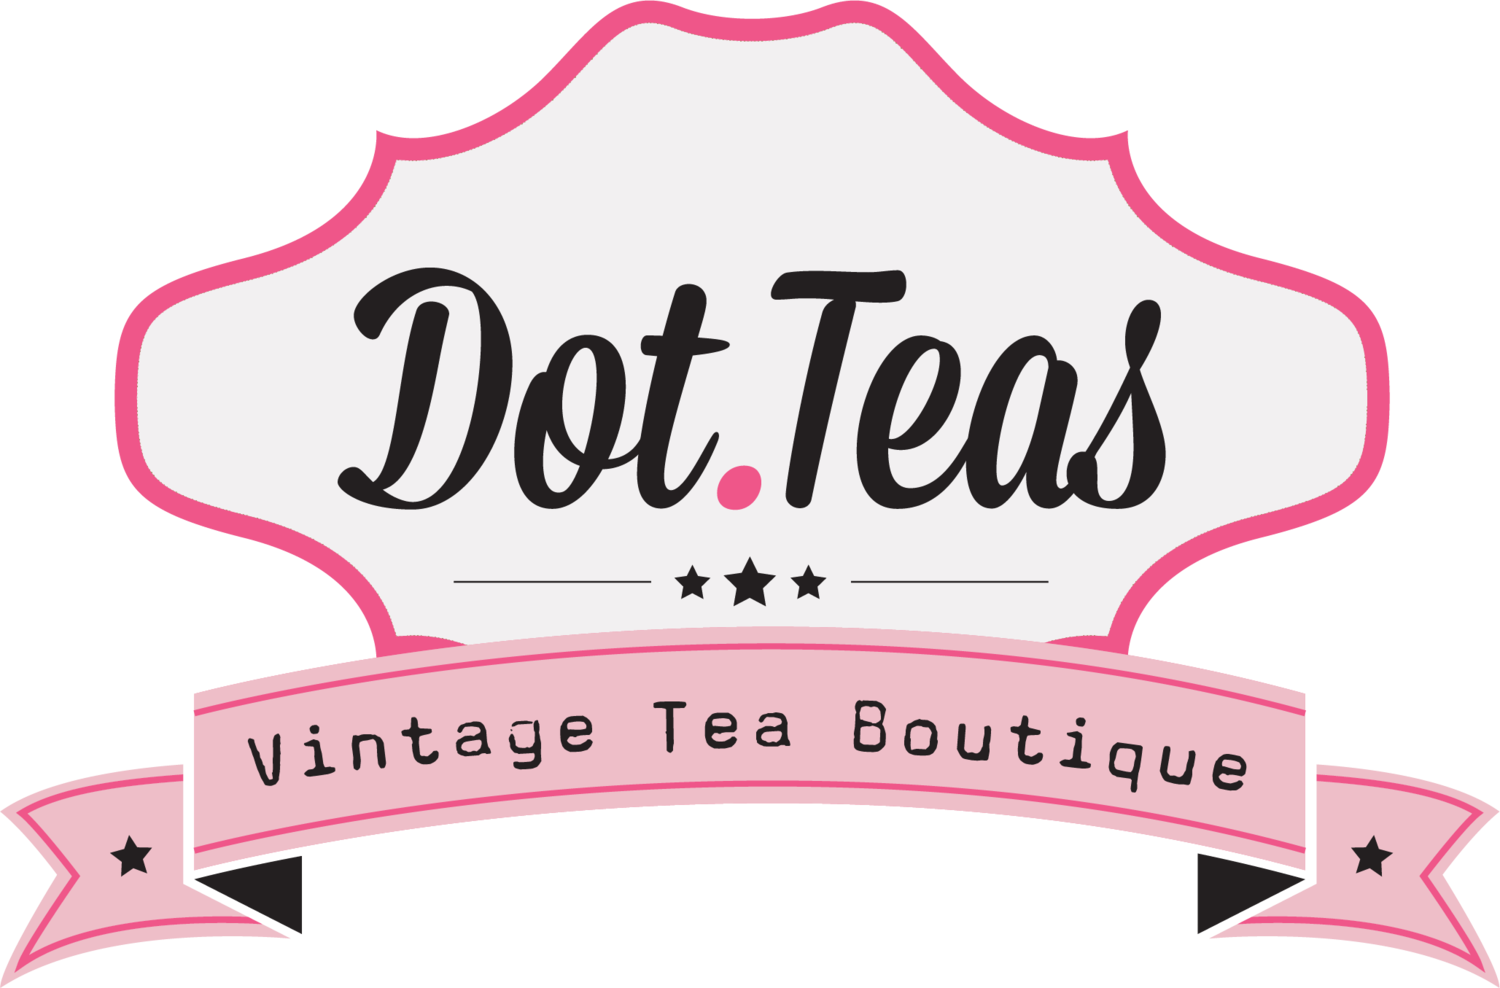 Dot Teas Vintage Tearooms